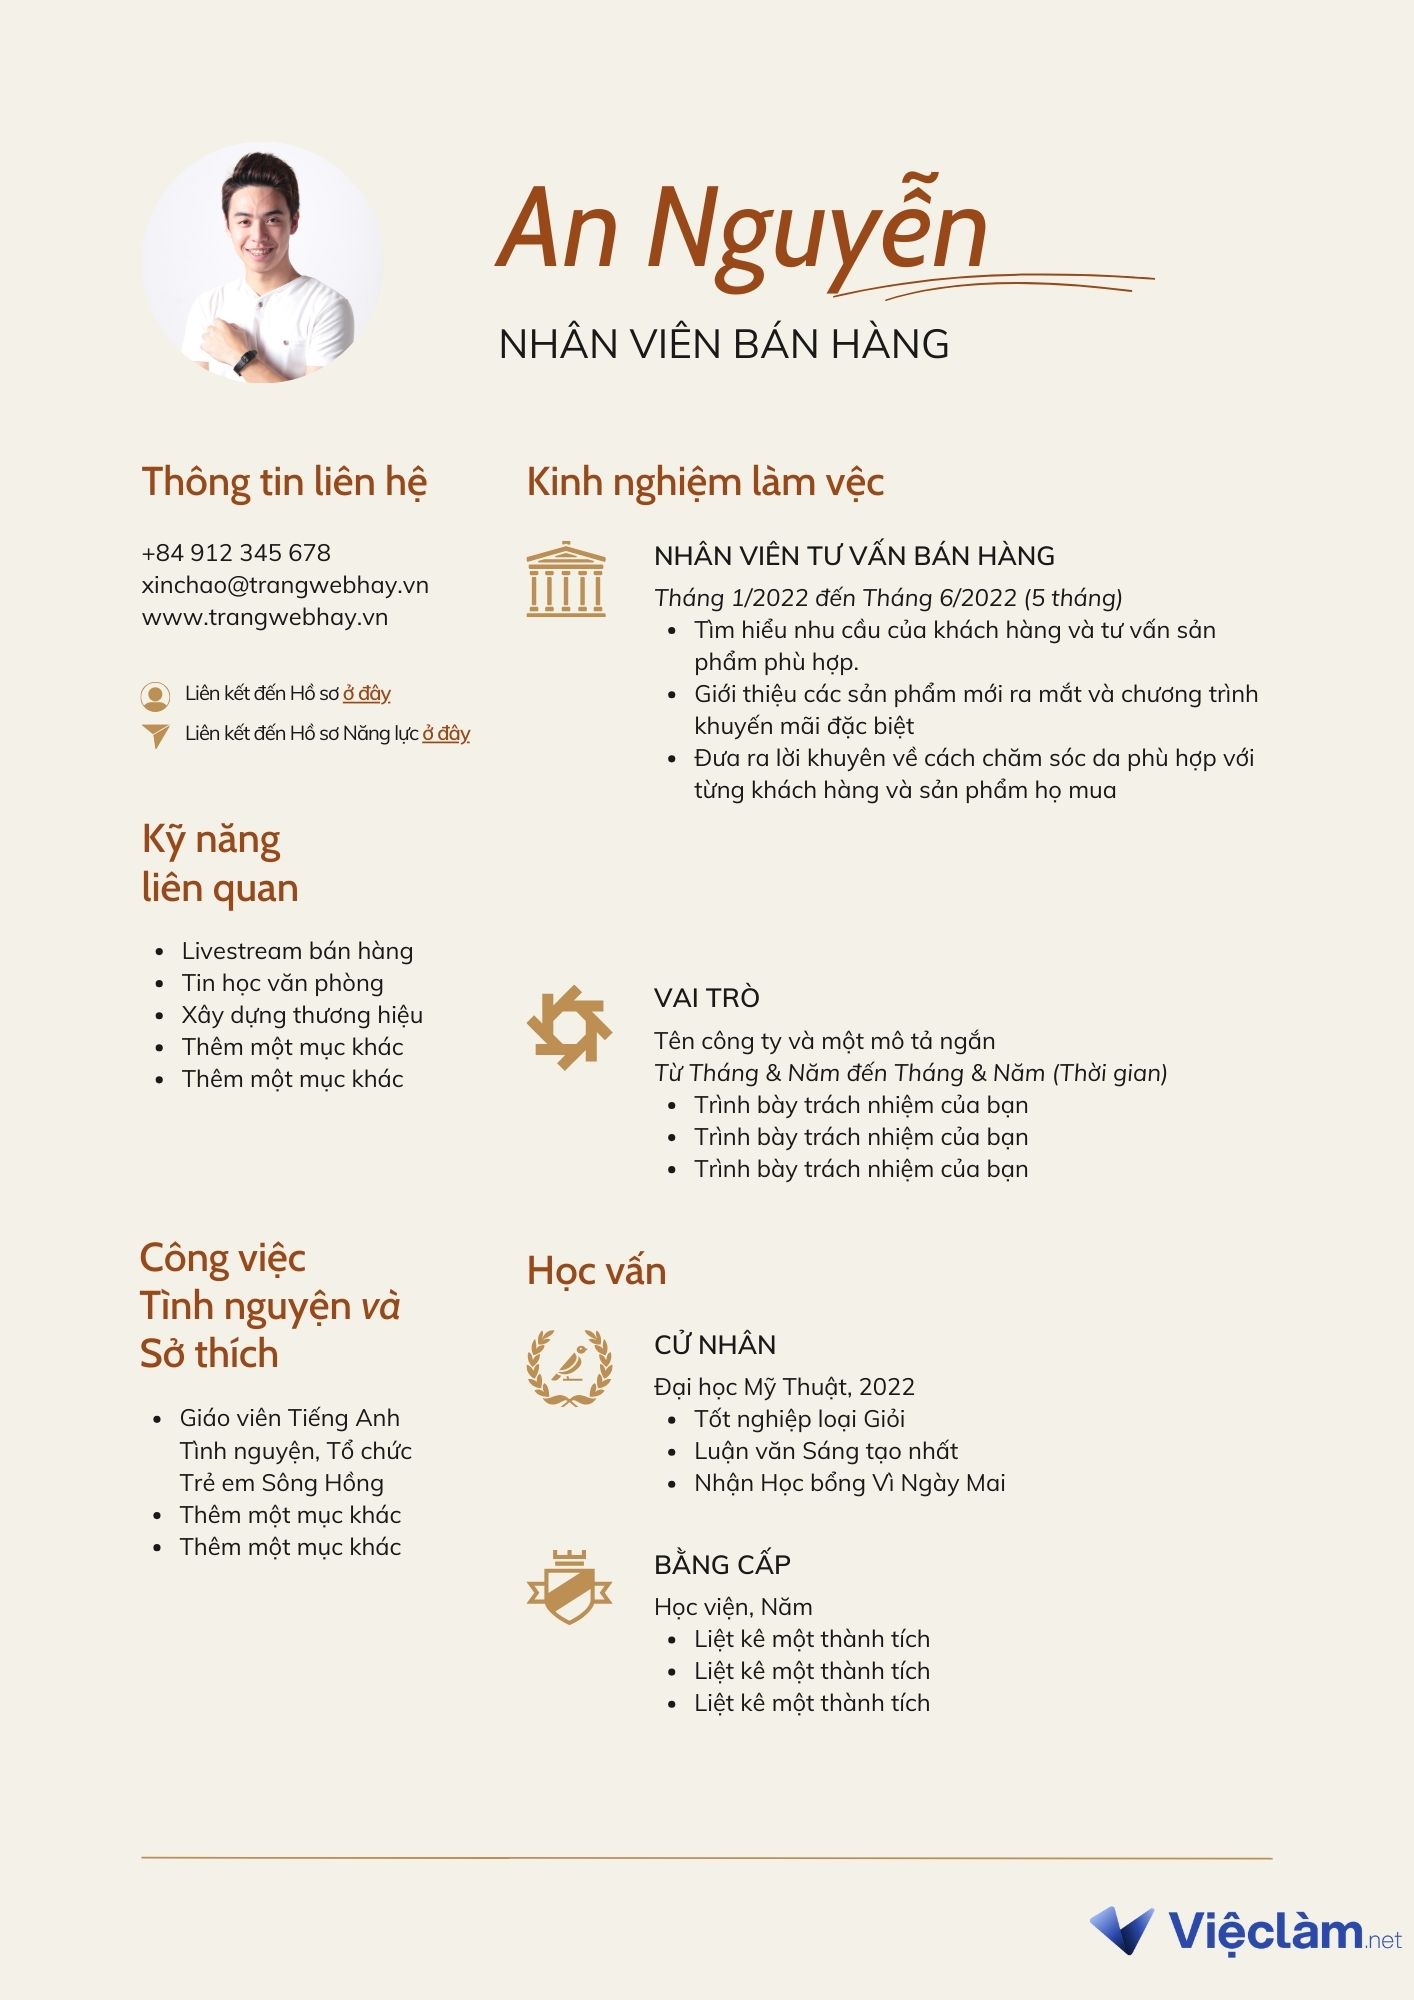 1. Mẫu CV nhân viên bán hàng bằng tiếng Việt